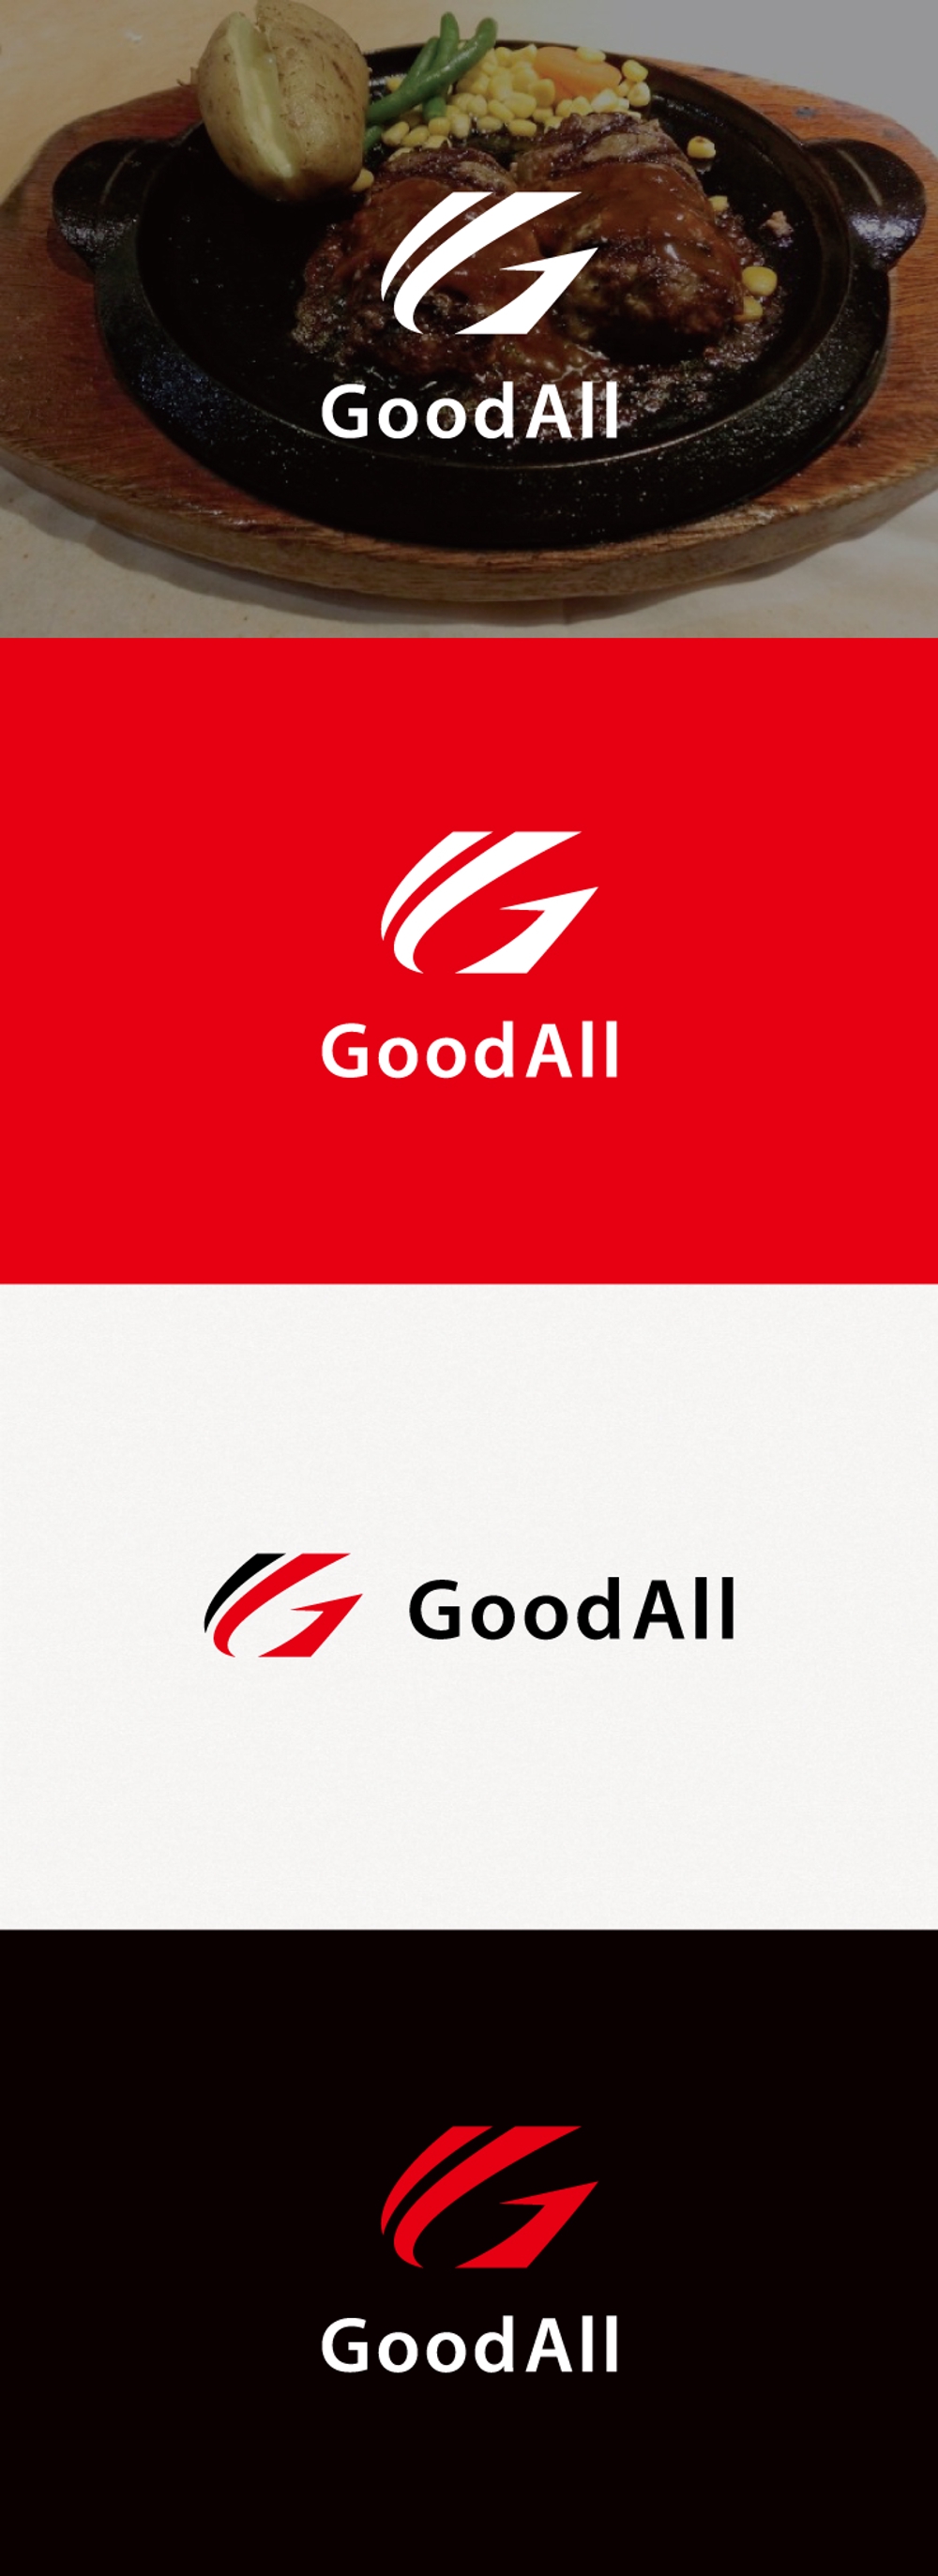 ハンバーグ、鉄板焼飲食店運営会社「GoodAll」のロゴ